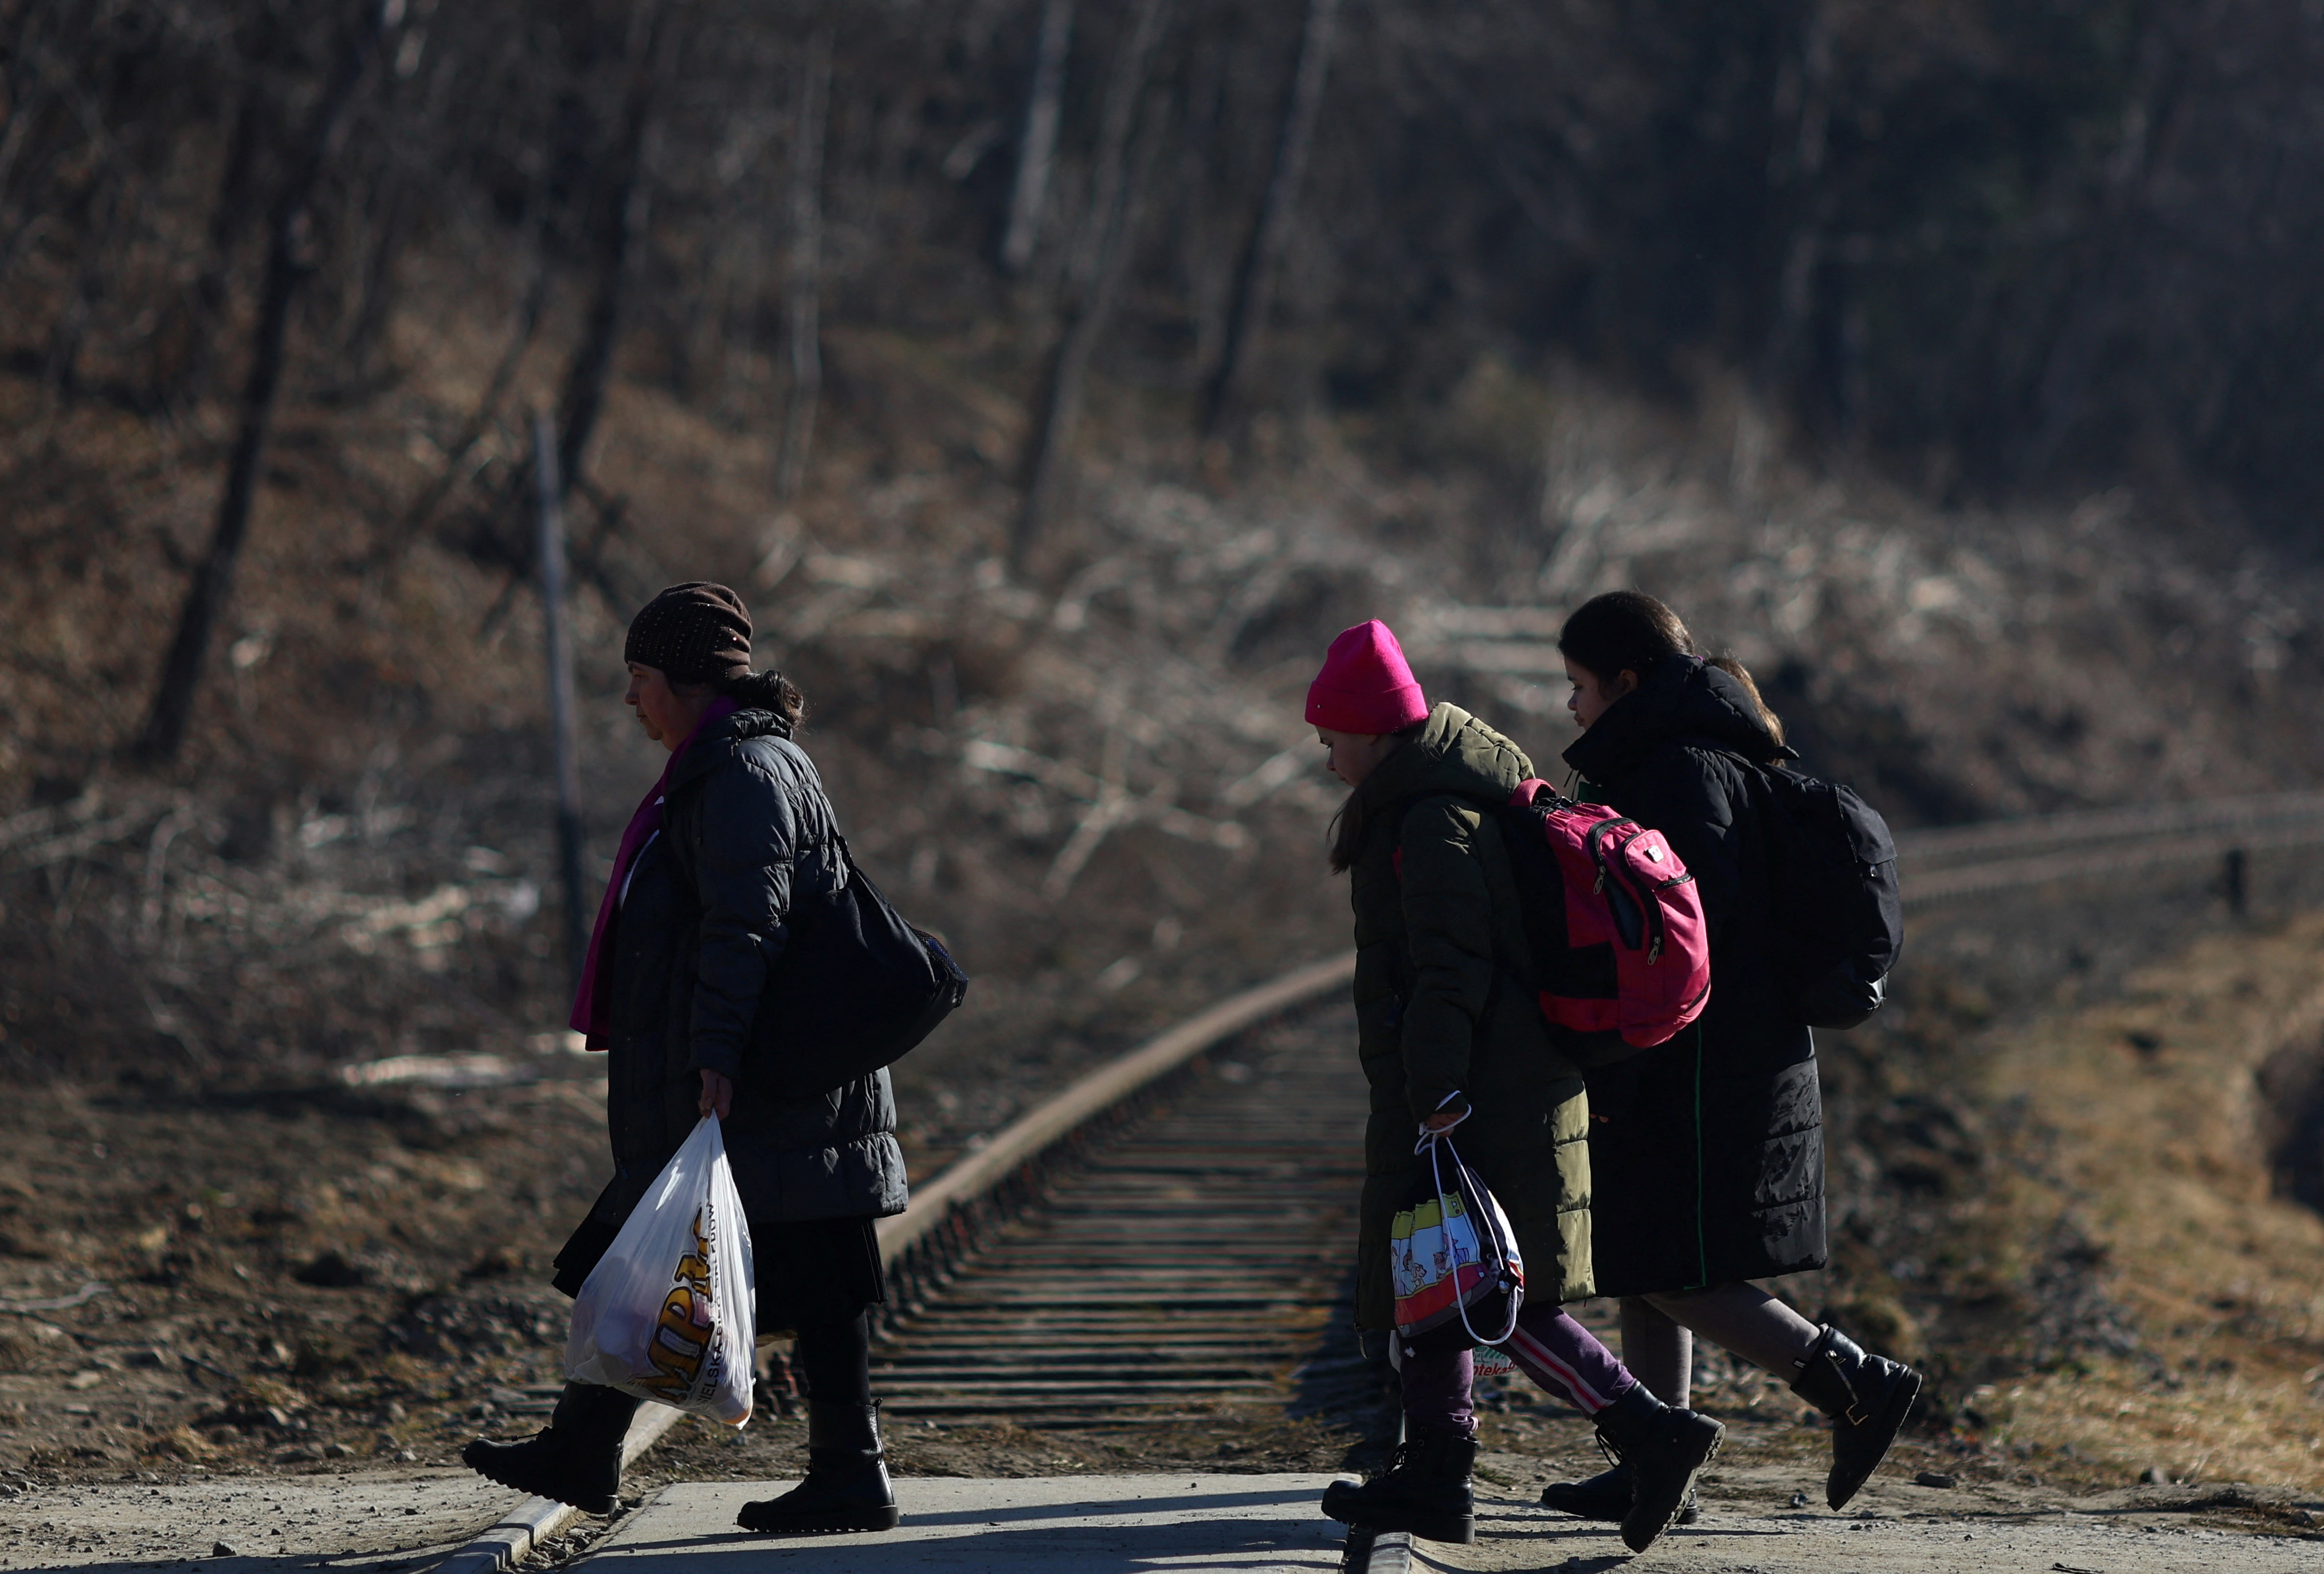 People fleeing from Russia's invasion of Ukraine, in Kroscienko